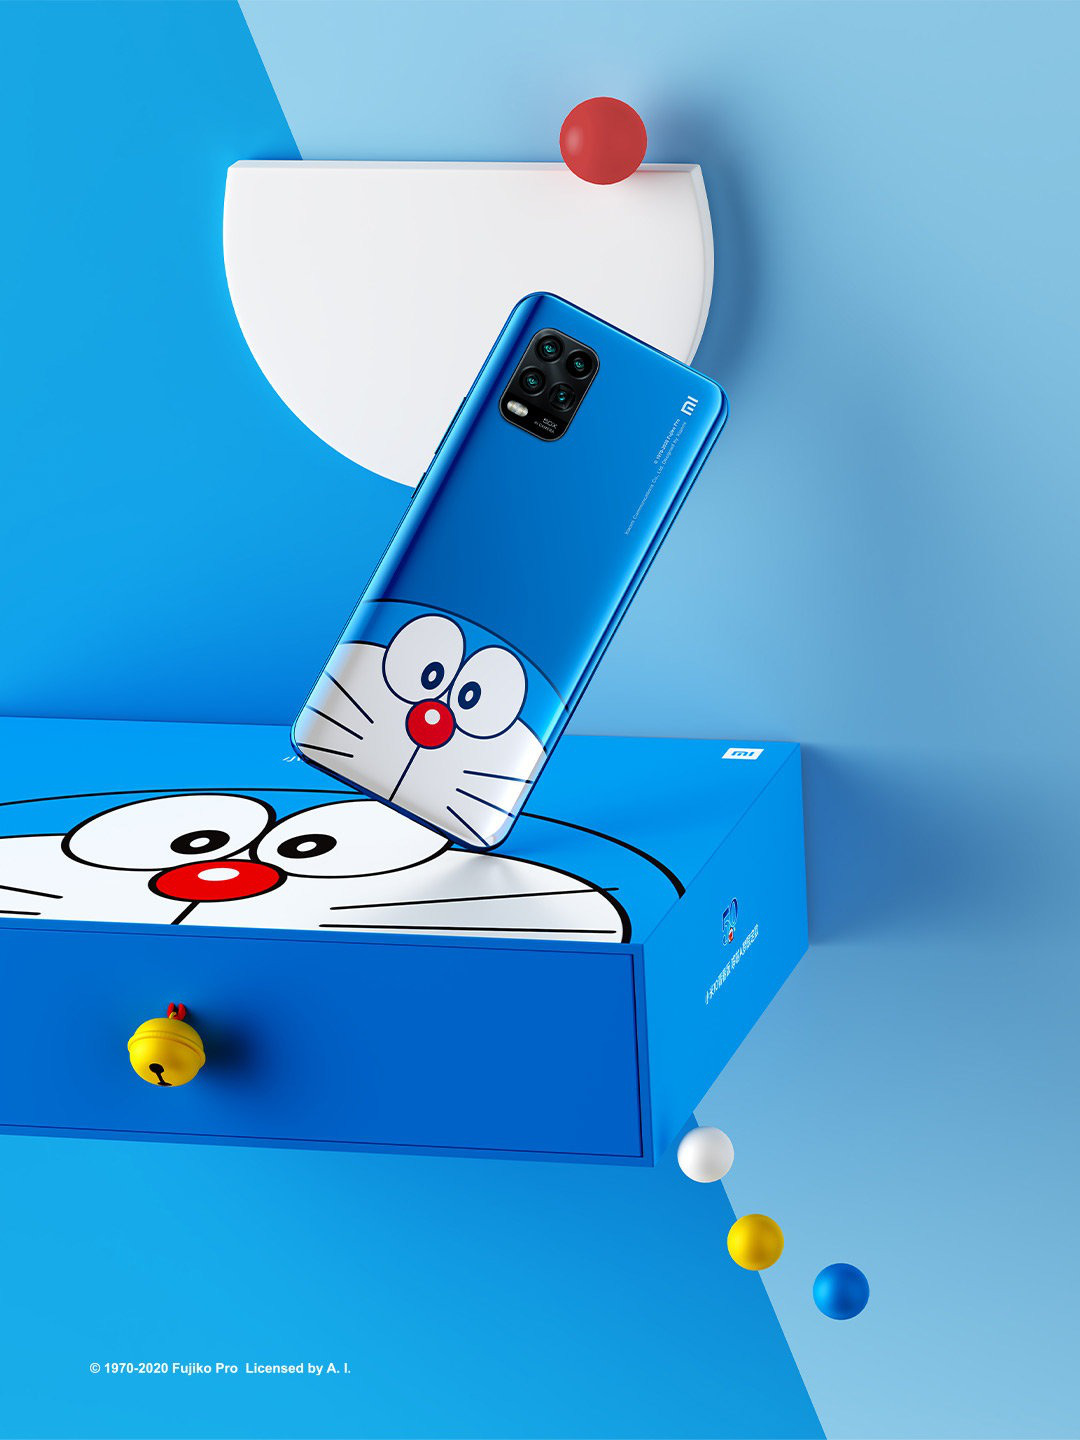 Xiaomi, Doraemon, điện thoại mèo ú: Hãy khám phá thế giới đáng yêu của Xiaomi, Doraemon và điện thoại mèo ú. Những hình ảnh đáng yêu này sẽ mang lại cho bạn những giây phút thư giãn và cảm giác hạnh phúc. Với những hình ảnh này, bạn nhất định sẽ thấy cuộc sống trở nên đáng yêu hơn.